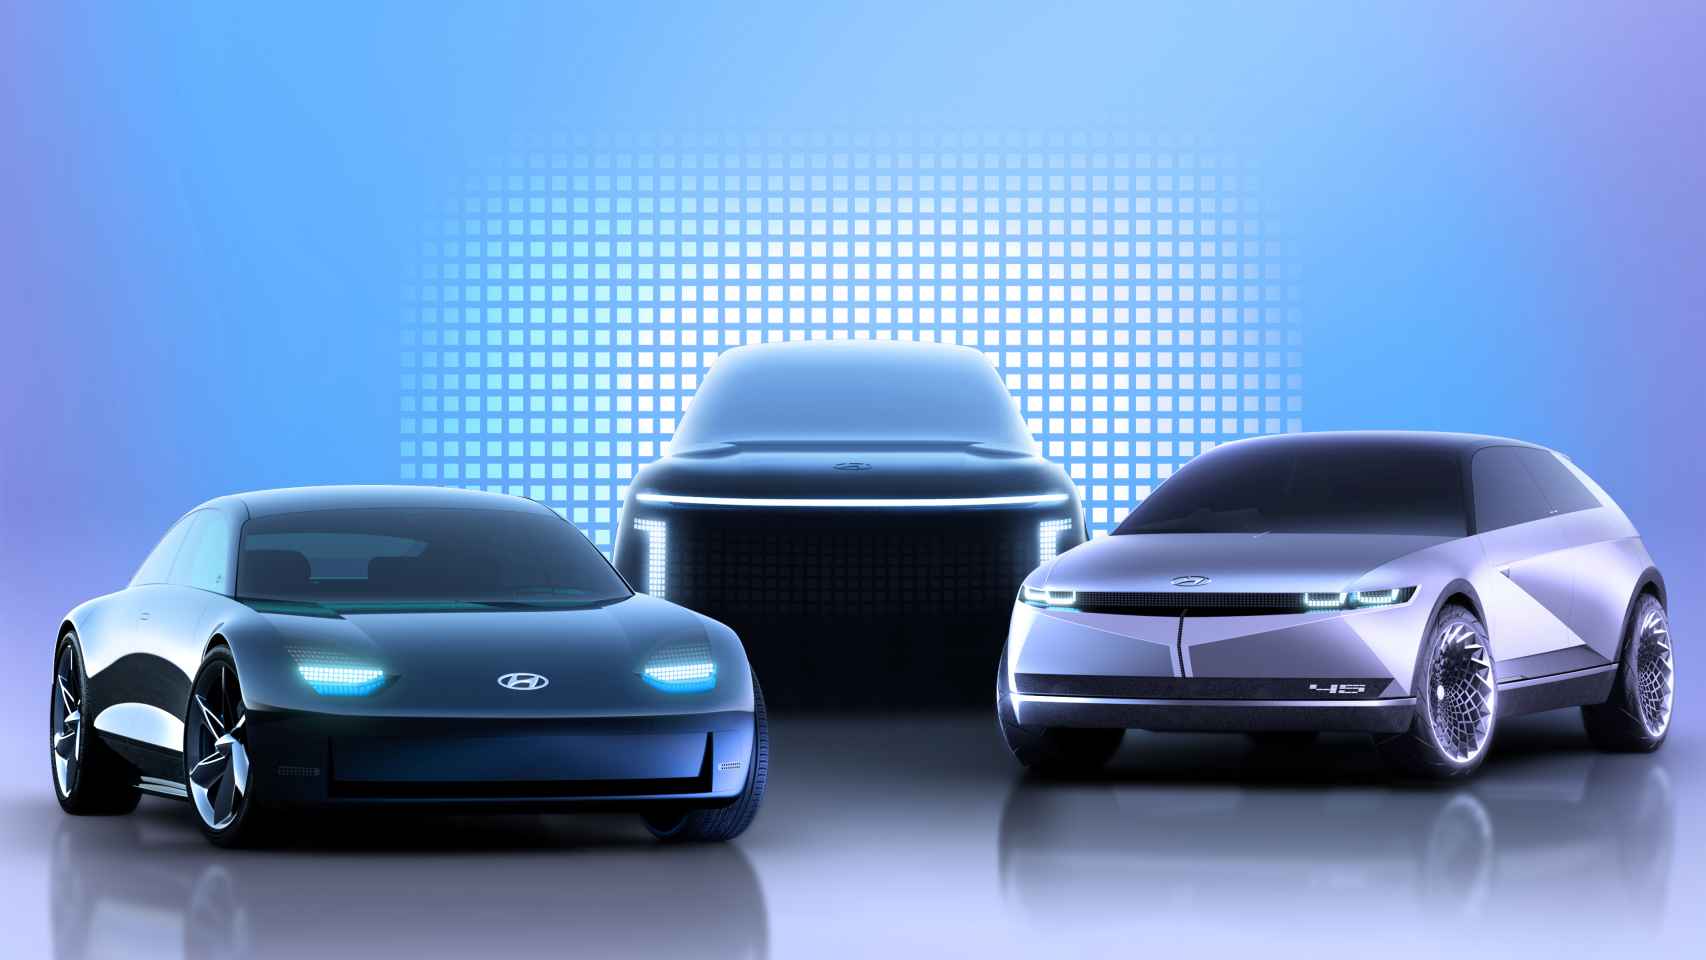 Ancitipo de la gama Ioniq de coches eléctricos que lanzará Hyundai.